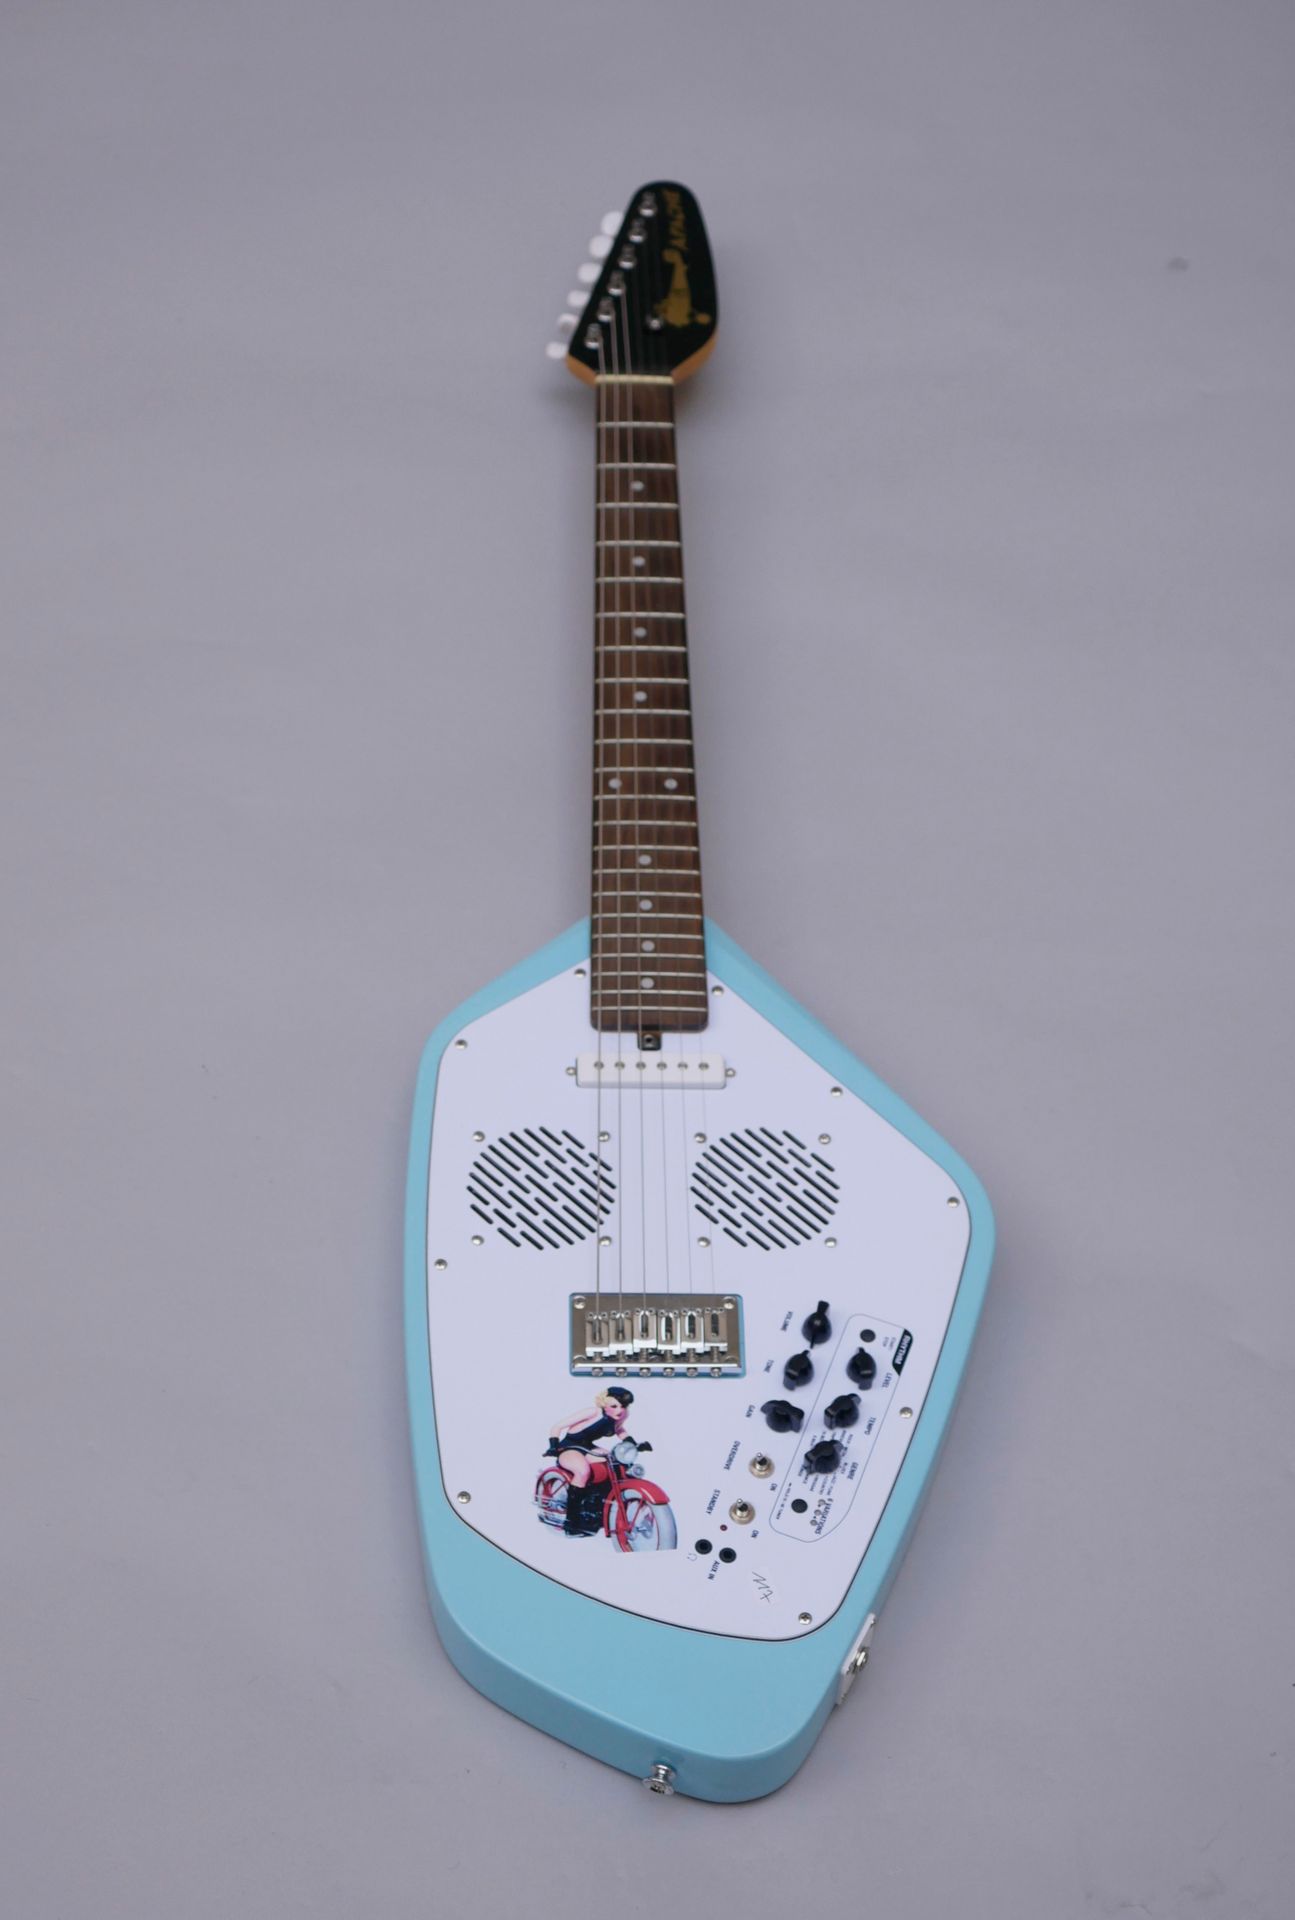 Null Guitarra eléctrica de cuerpo sólido VOX modelo Apache 2, fabricada en China&hellip;